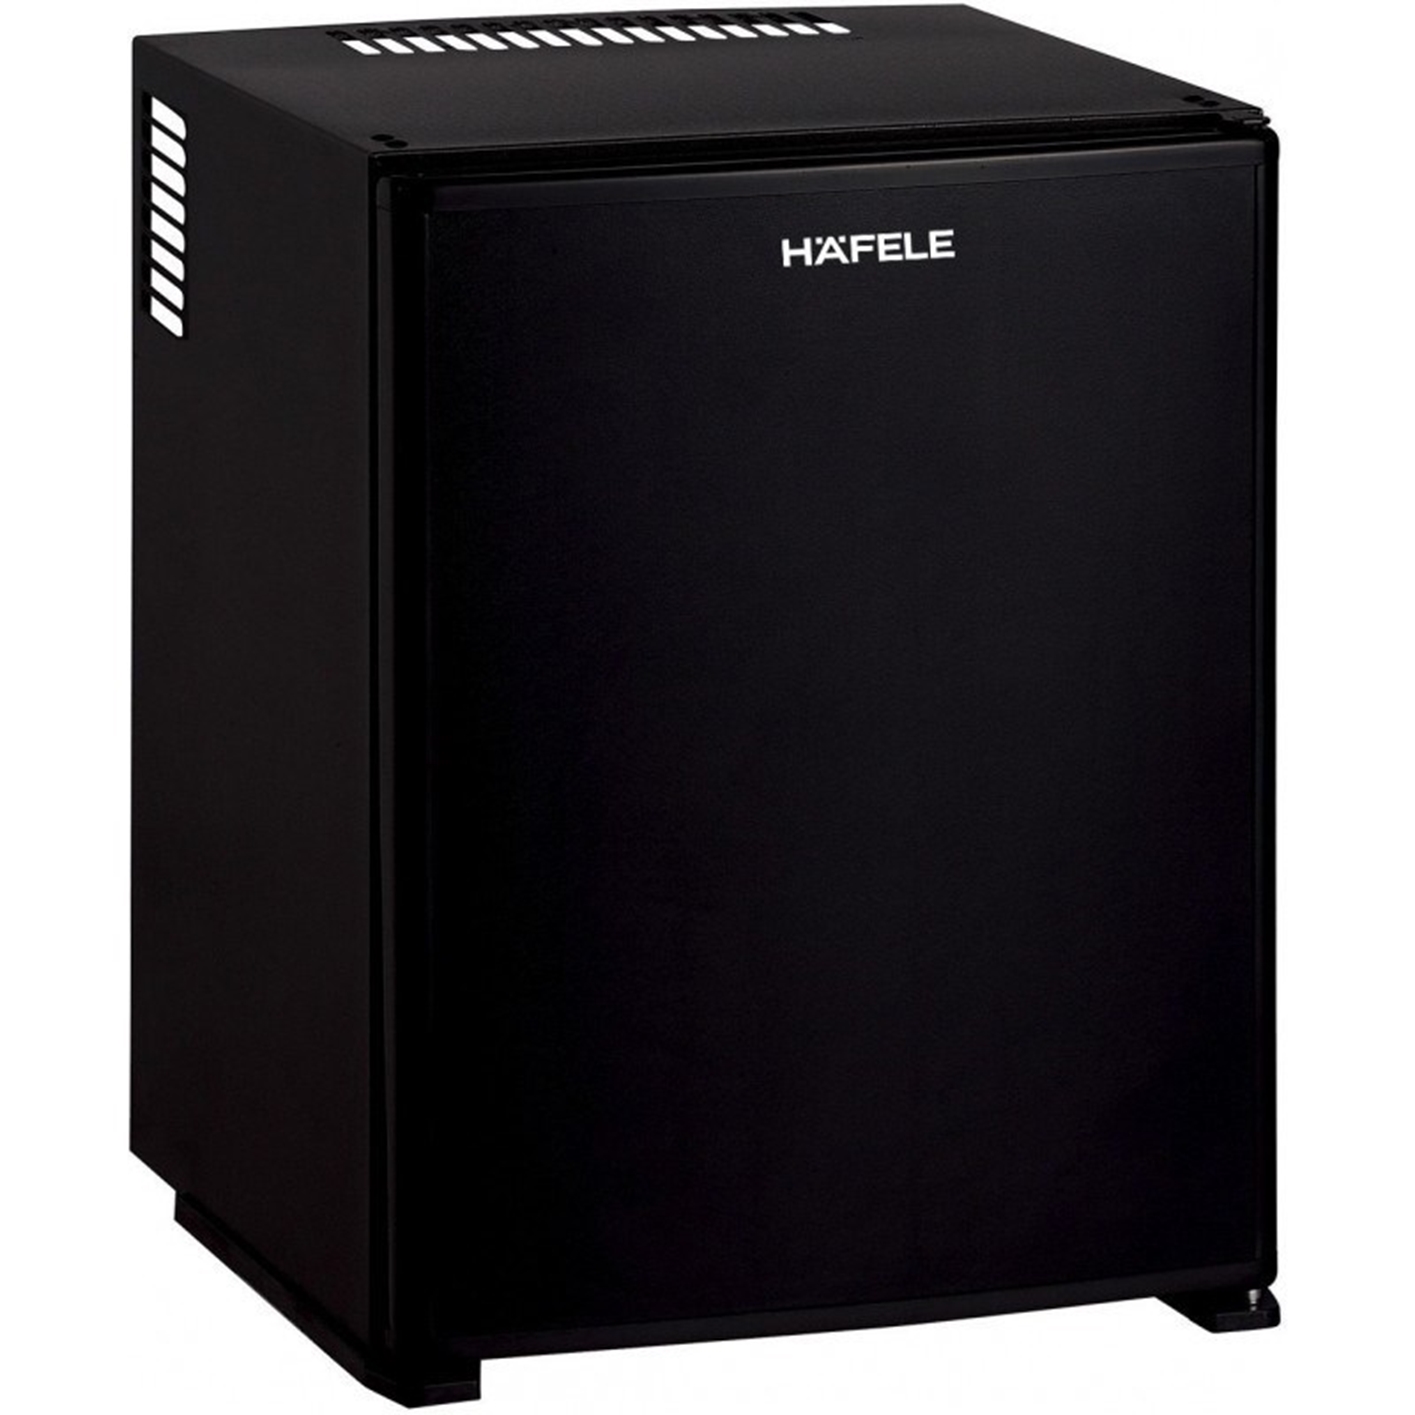 Hình ảnh của Tủ lạnh mini Hafele HF-M40S 536.14.010